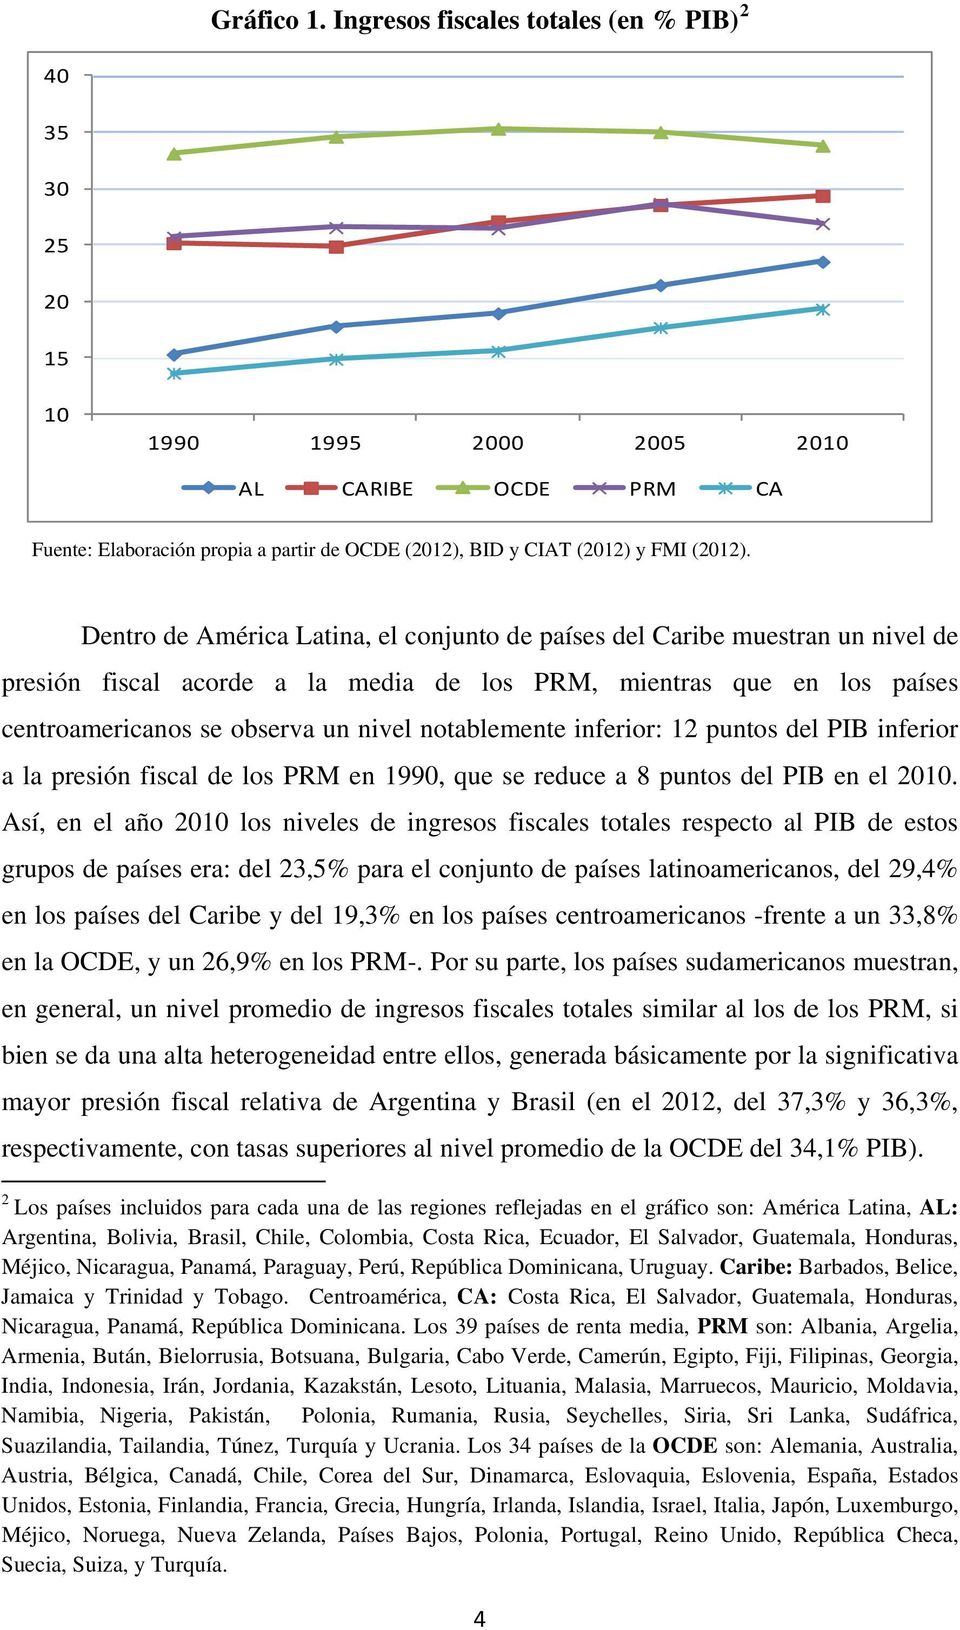 Dentro de América Latina, el conjunto de países del Caribe muestran un nivel de presión fiscal acorde a la media de los PRM, mientras que en los países centroamericanos se observa un nivel